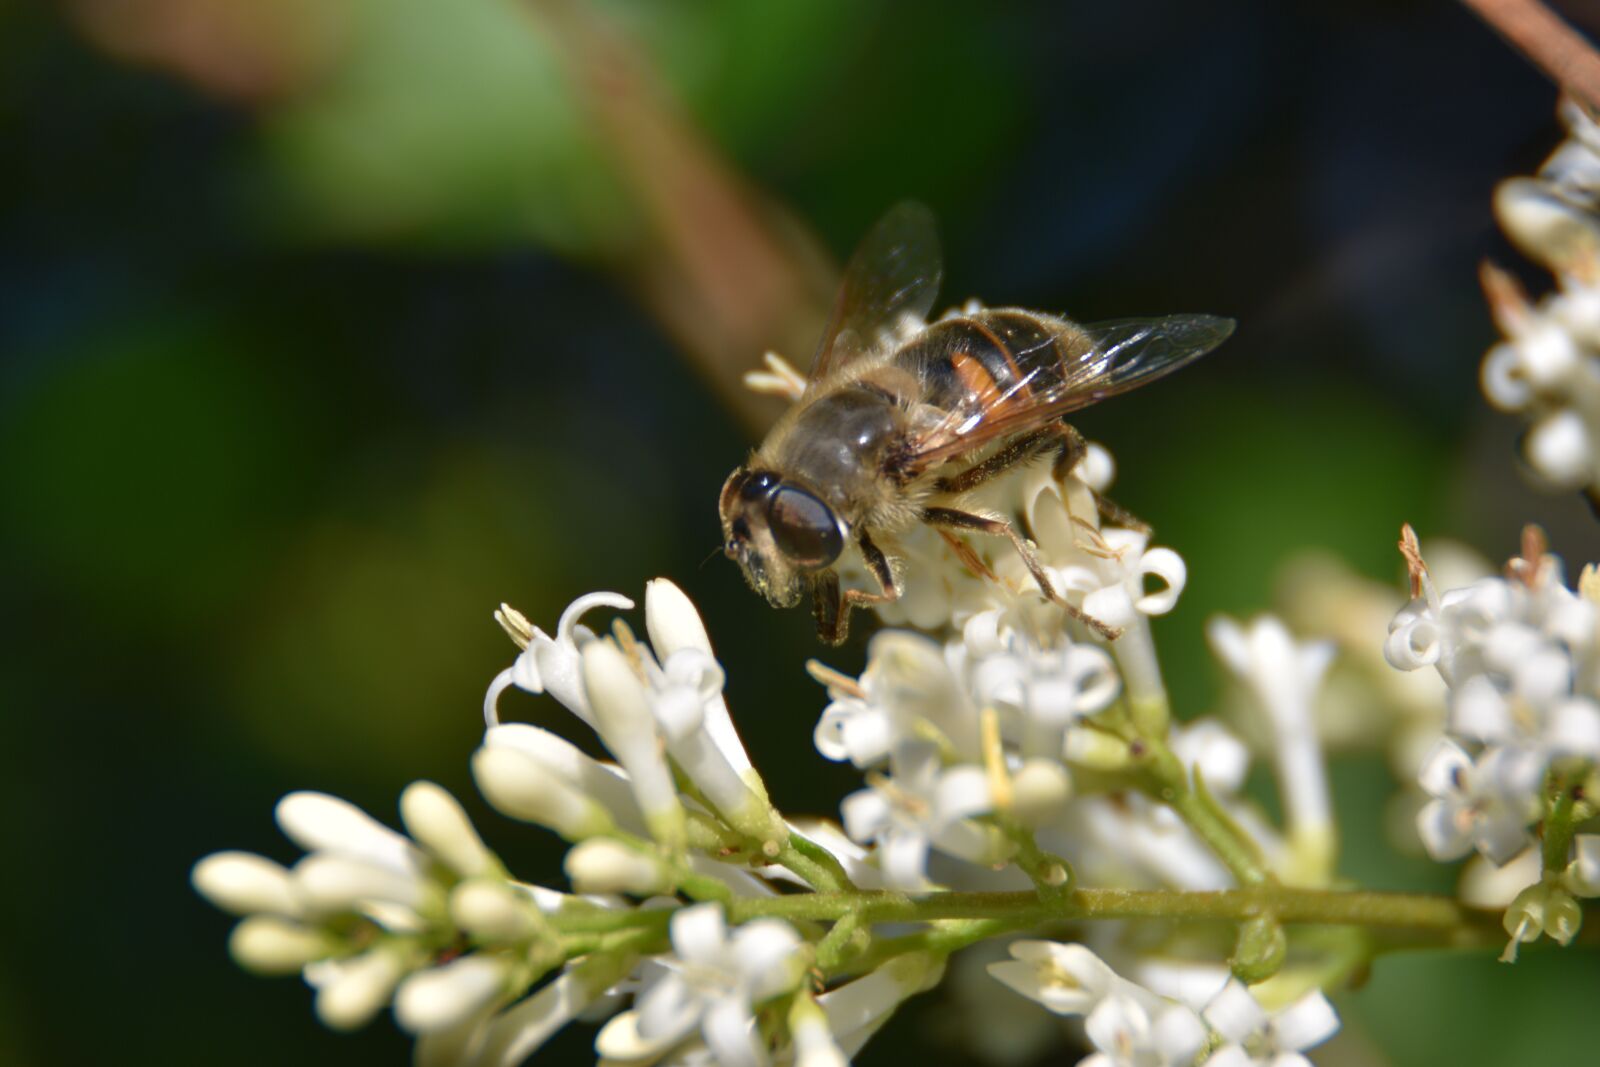 Nikon D3400 sample photo. Drone bee, garden, nature photography